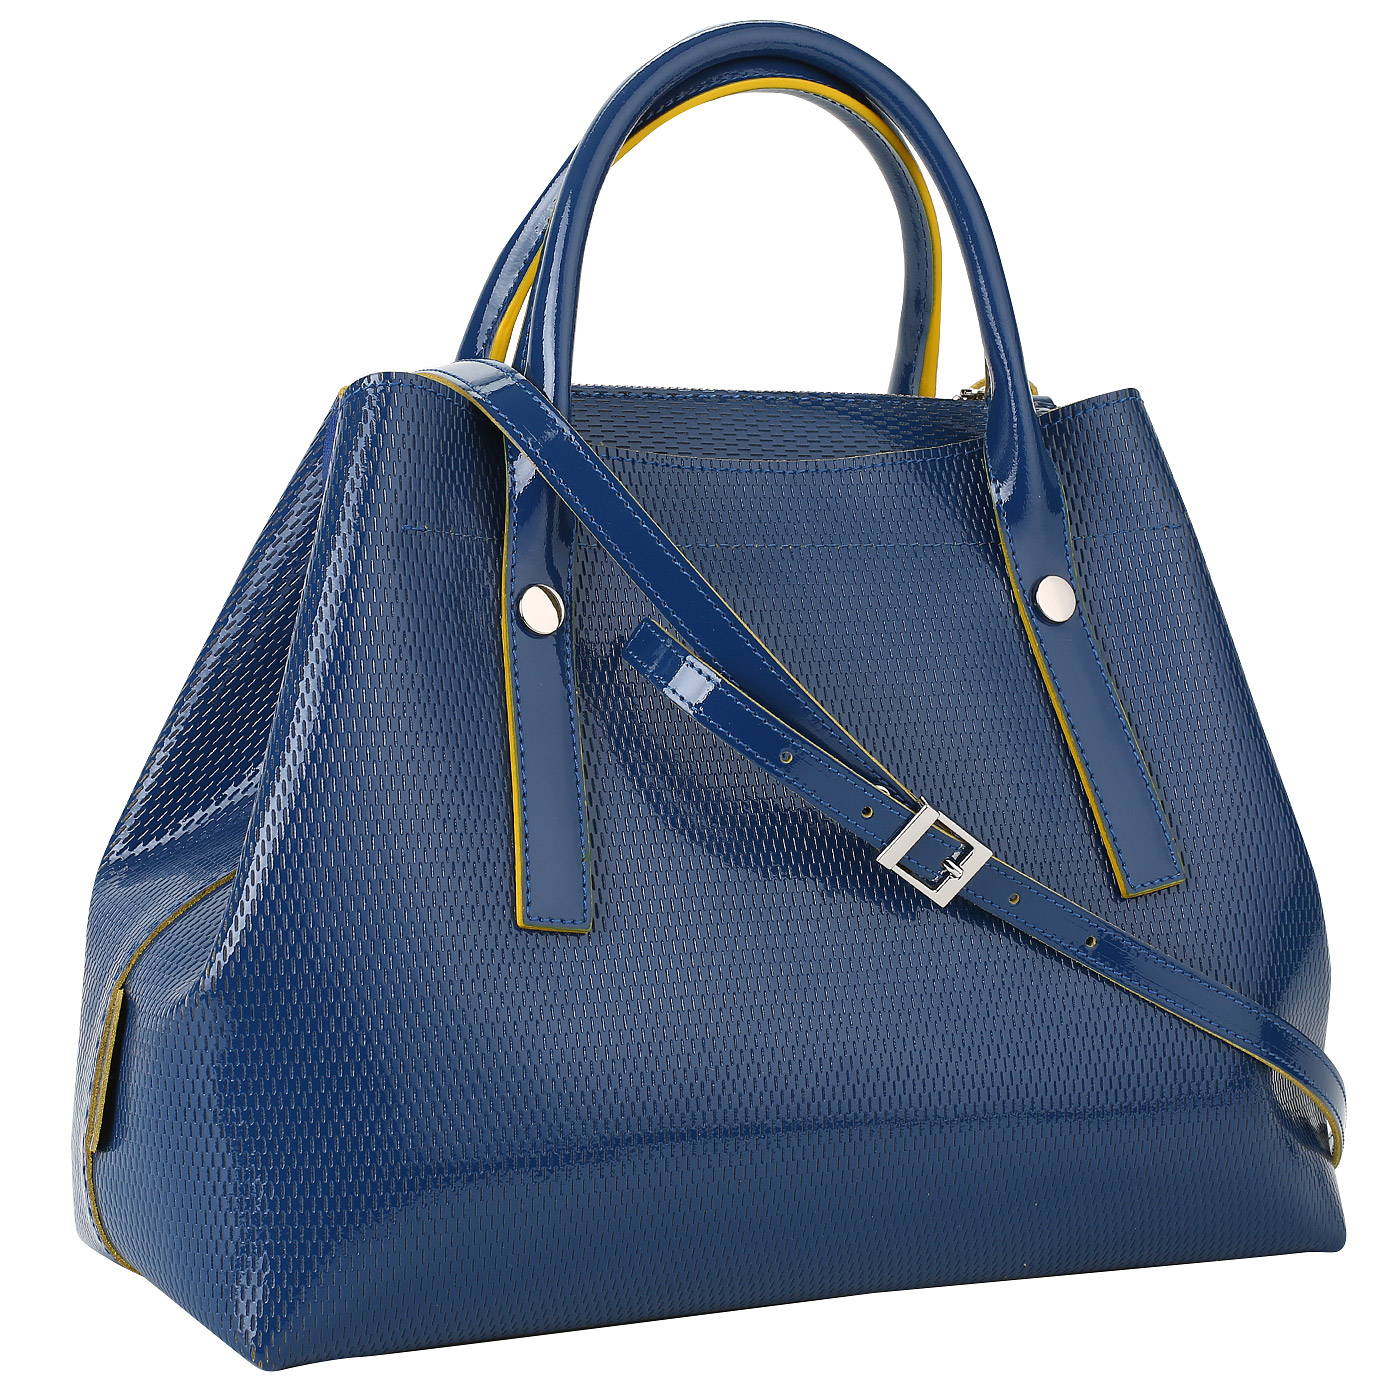 Синяя сумка из натуральной кожи Ripani Glassa